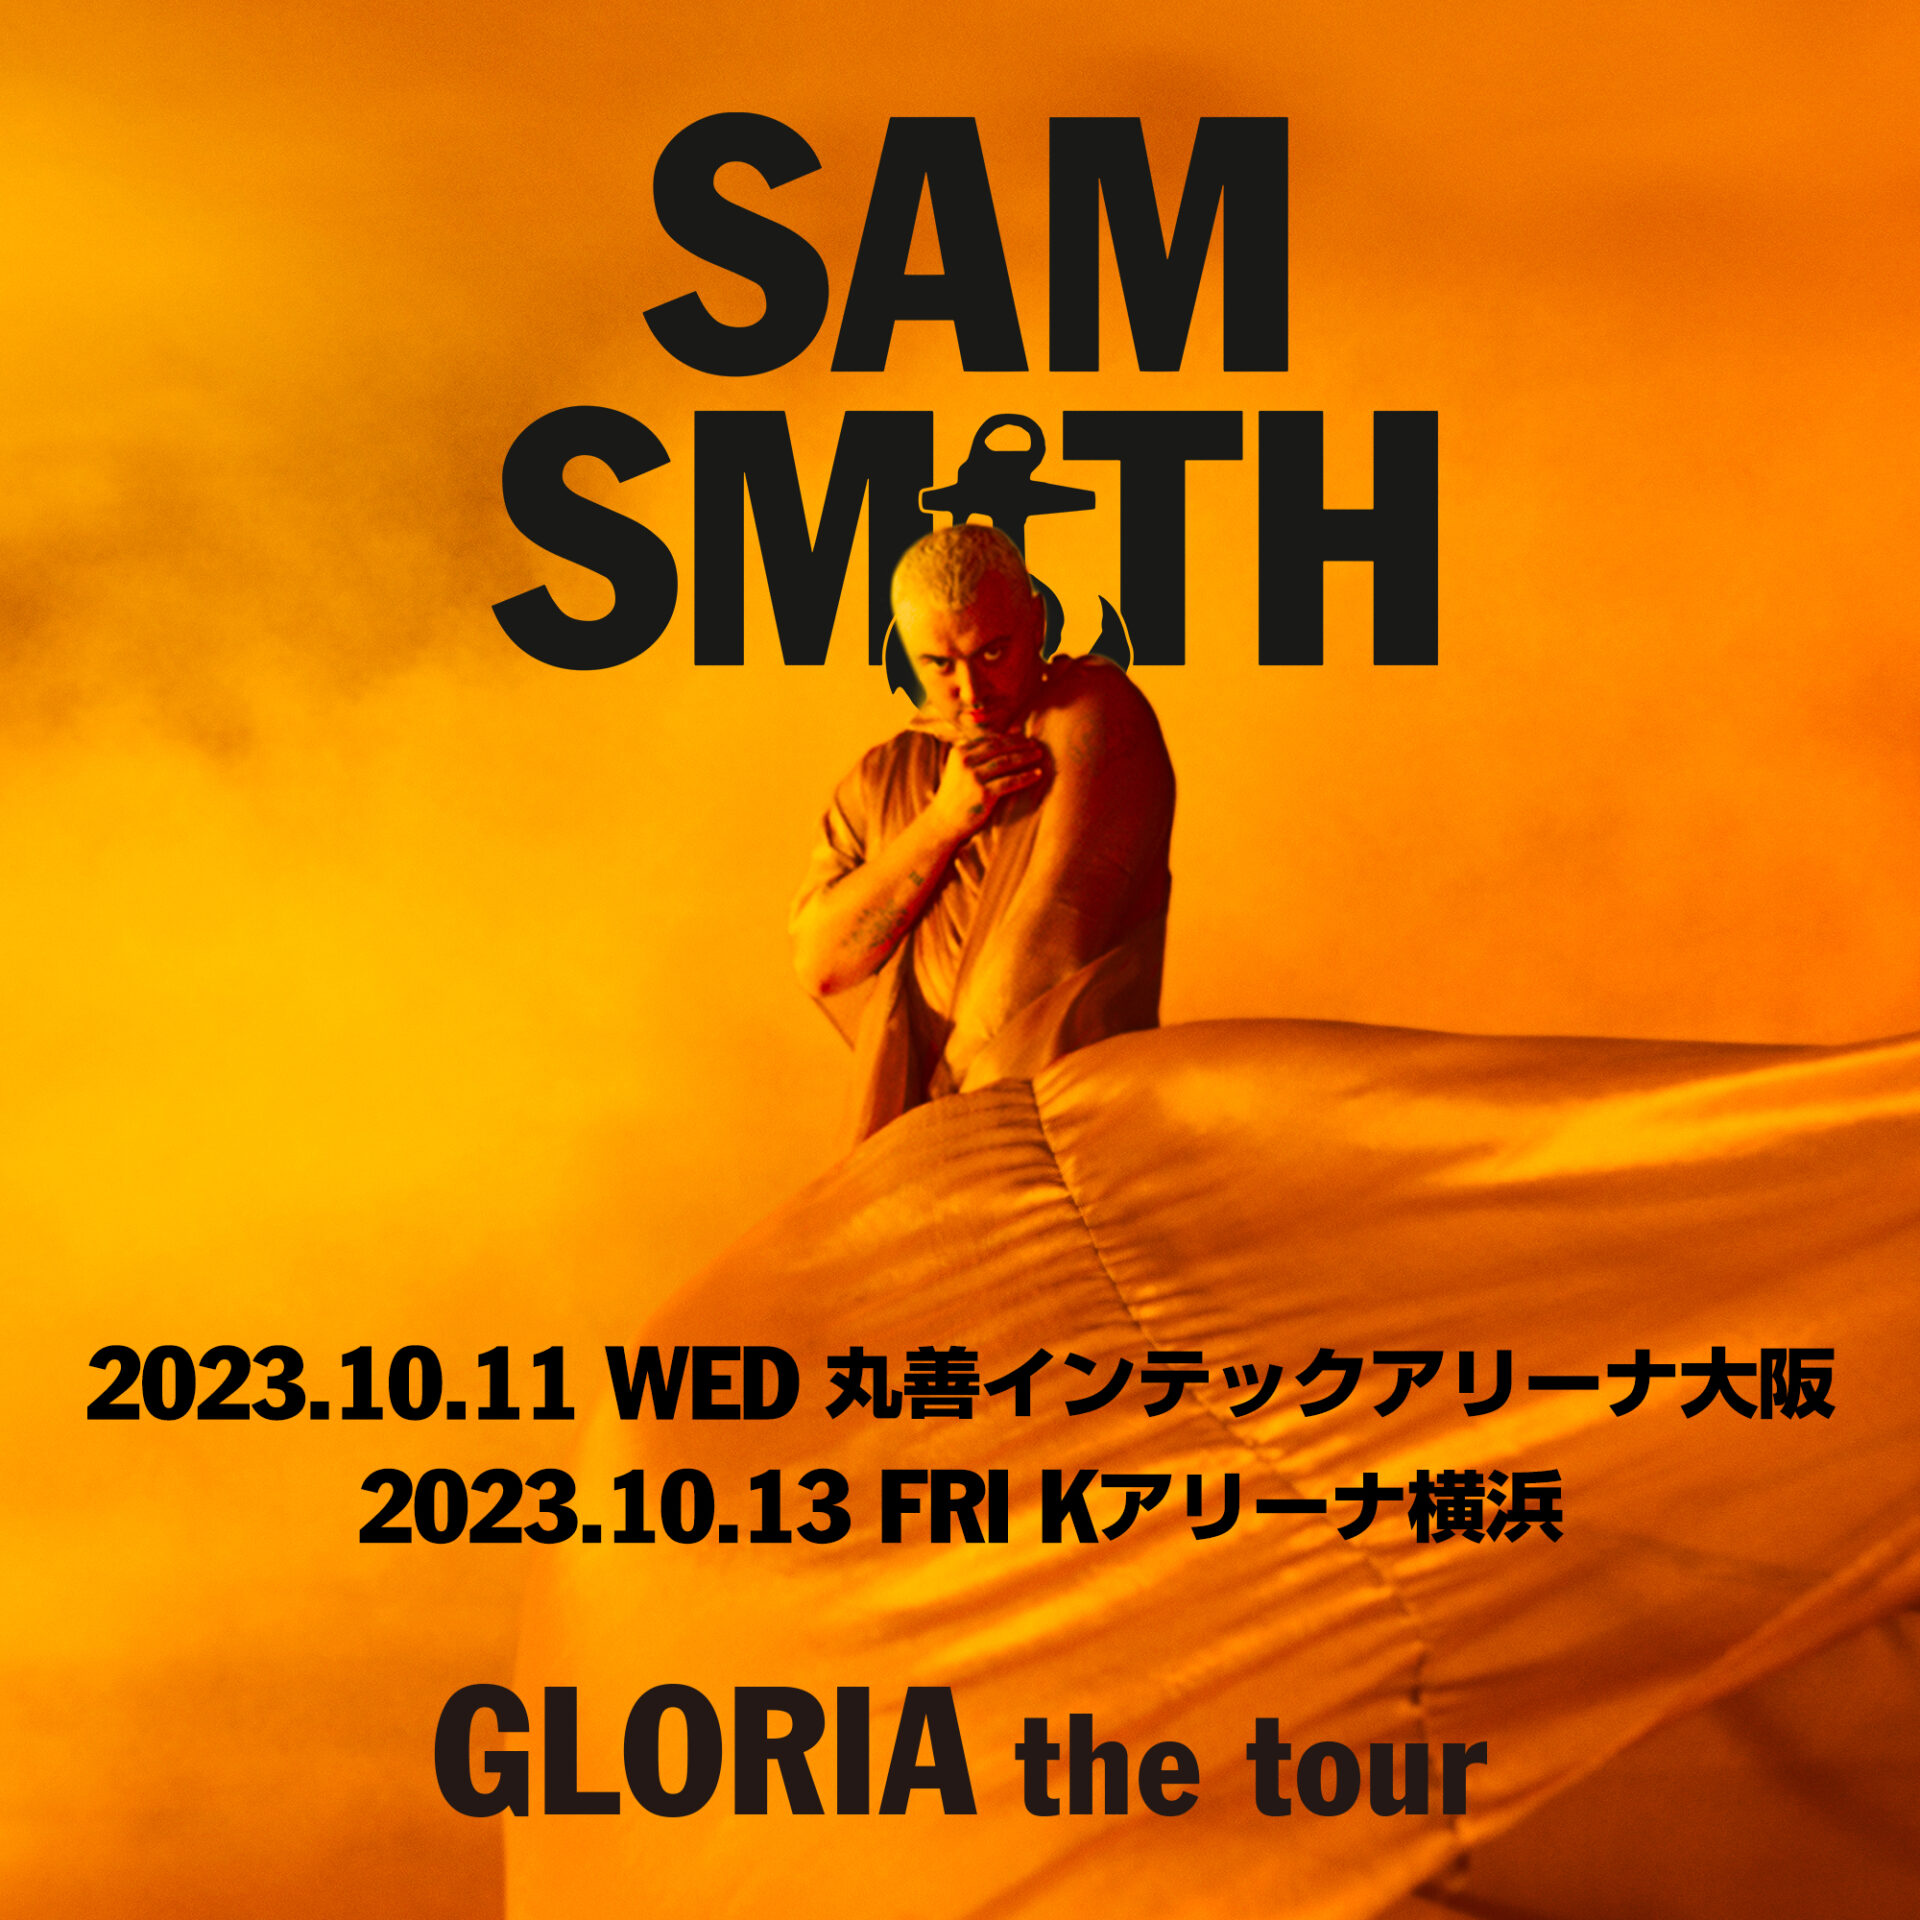 サム・スミス 来日公演「GLORIA The tour」